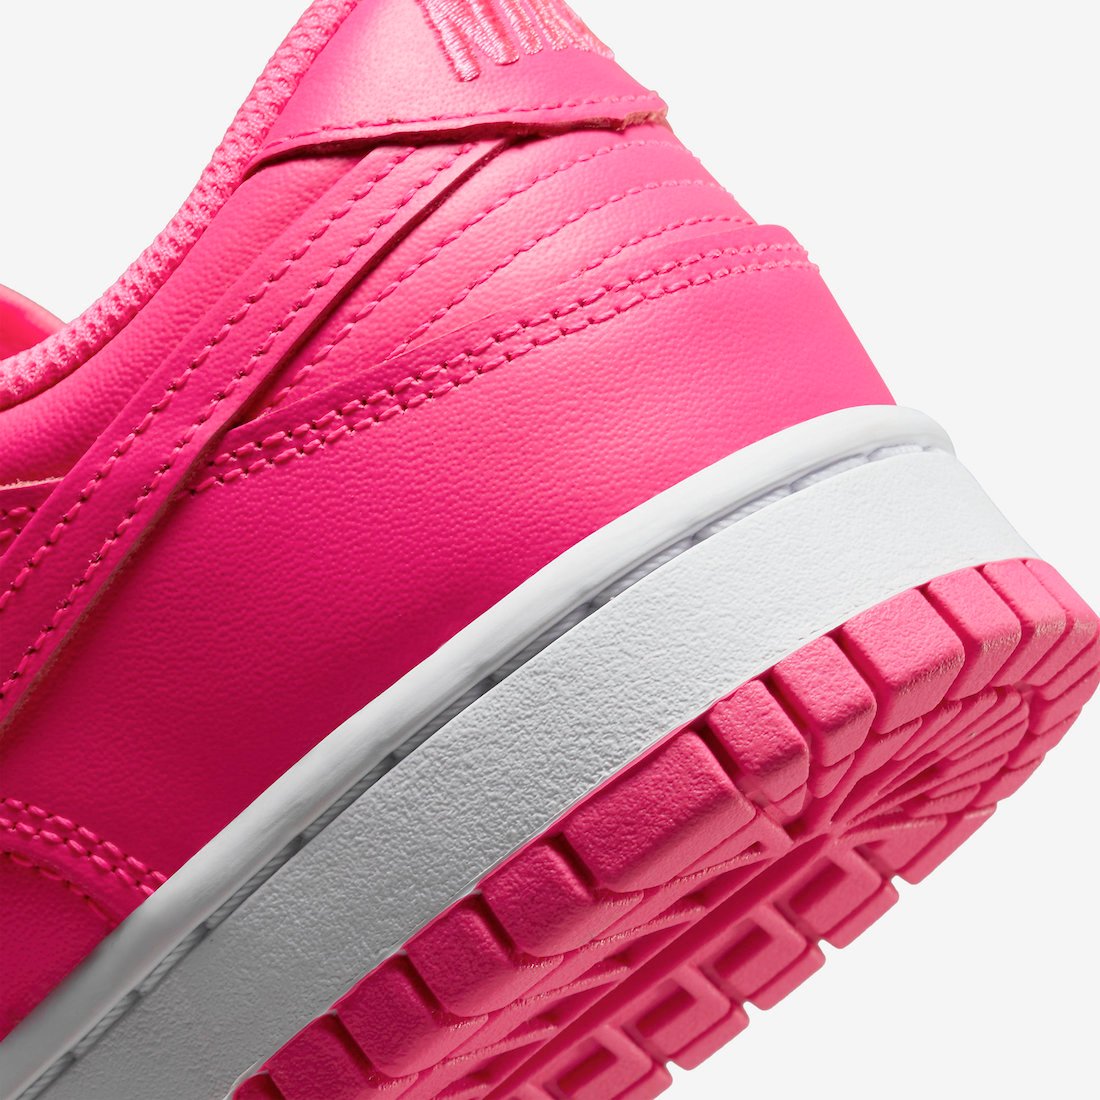 Nike Dunk Low Hyper Pink DZ5196-600 Release Date Info